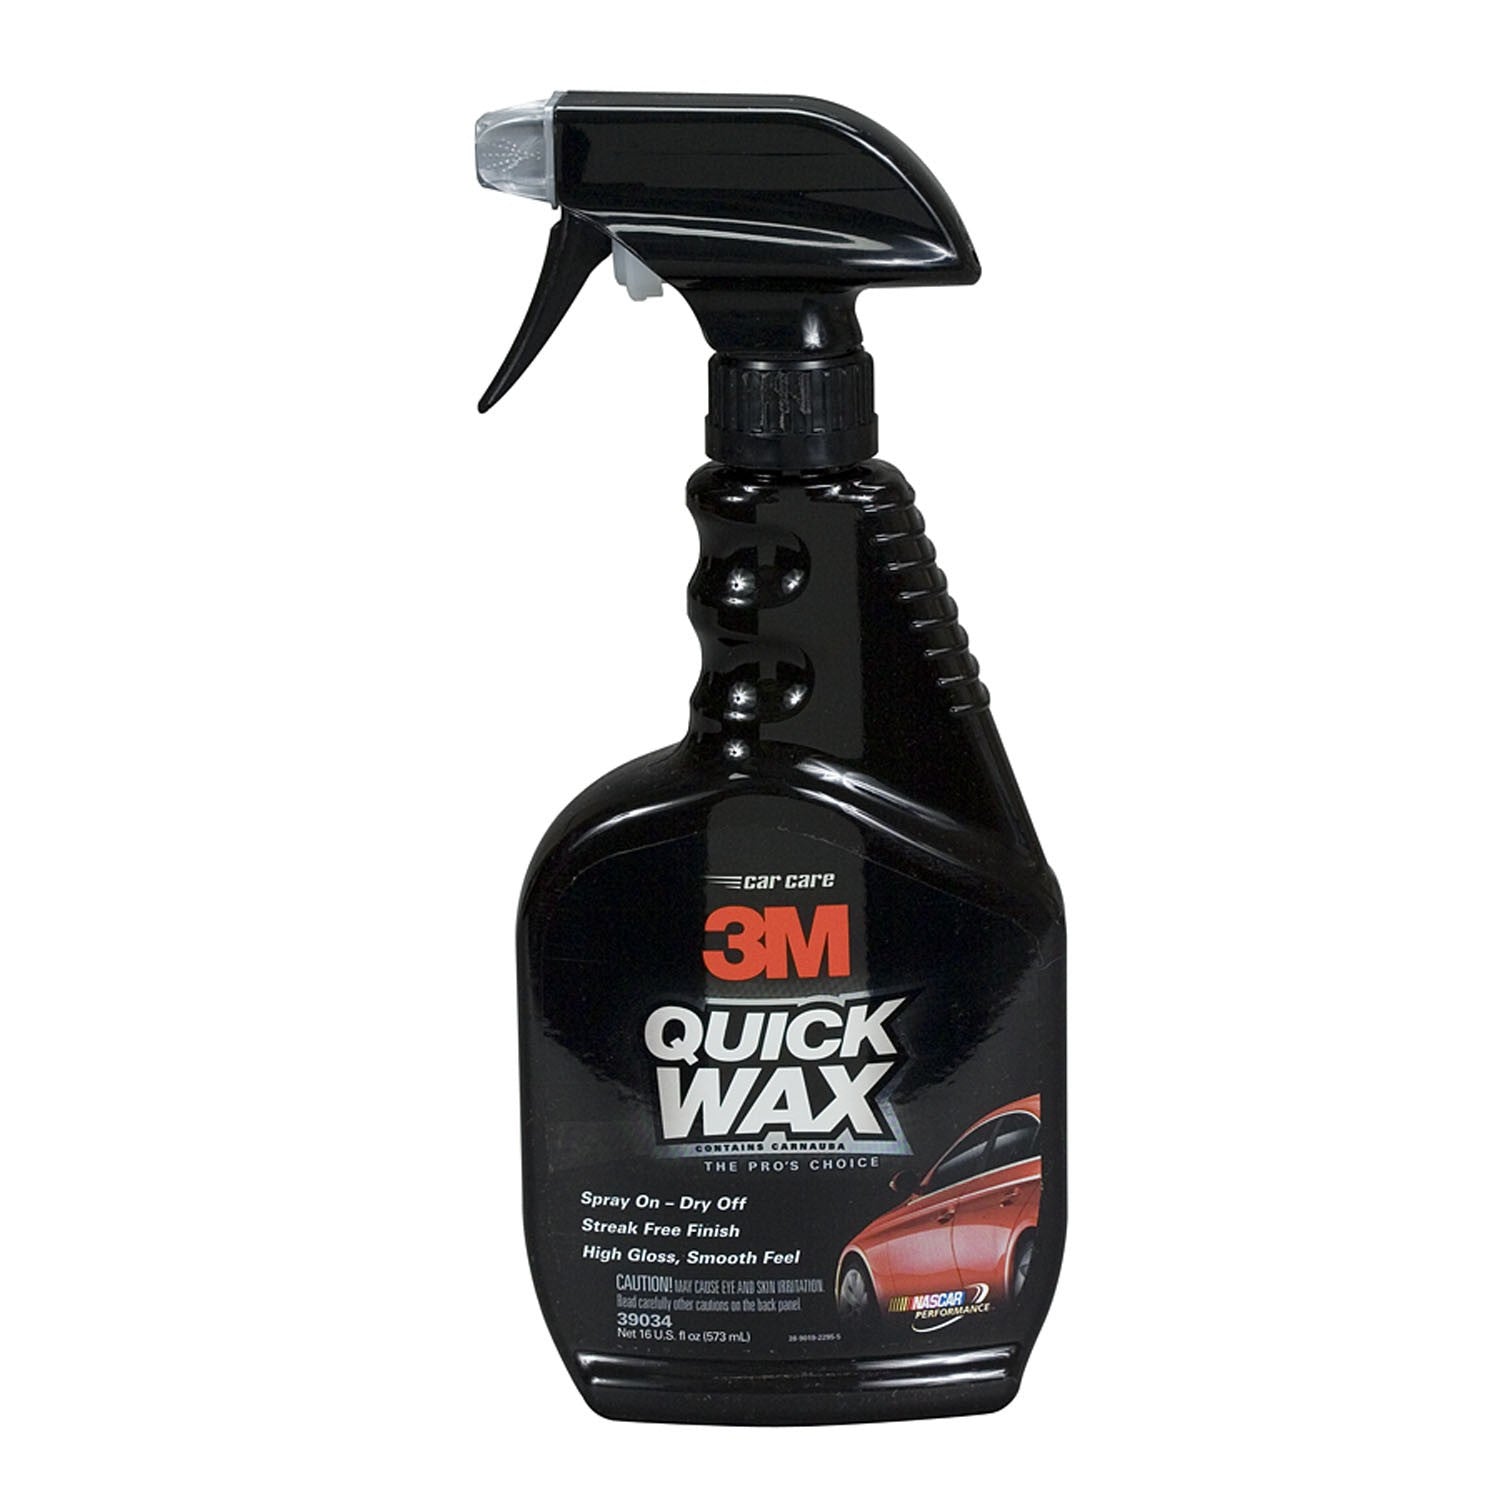 3M Quick Wax, 16 oz./473ml